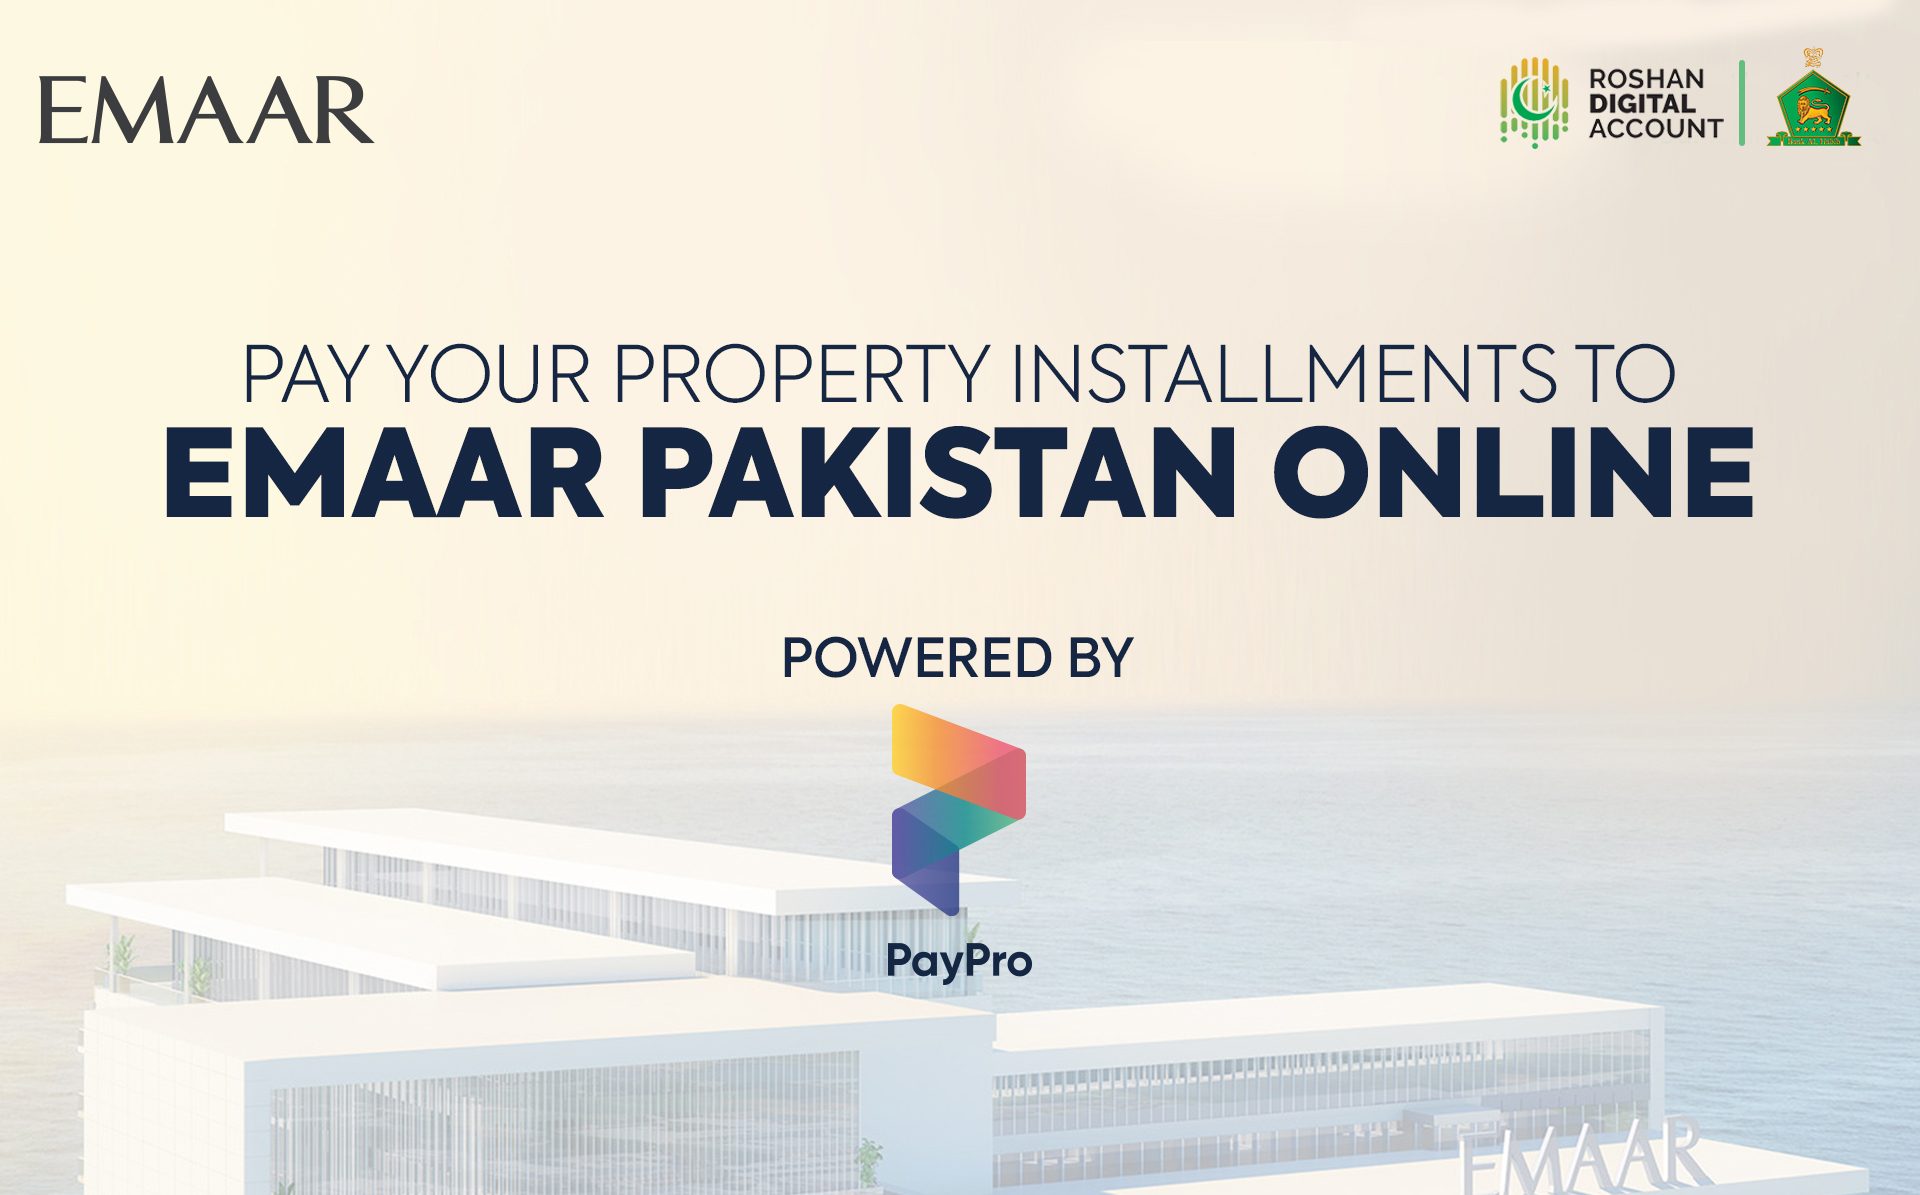 Bank Al Habib Roshan Digital Account x PayPro x EMAAR Pakistan | Update for Overseas Online Payments